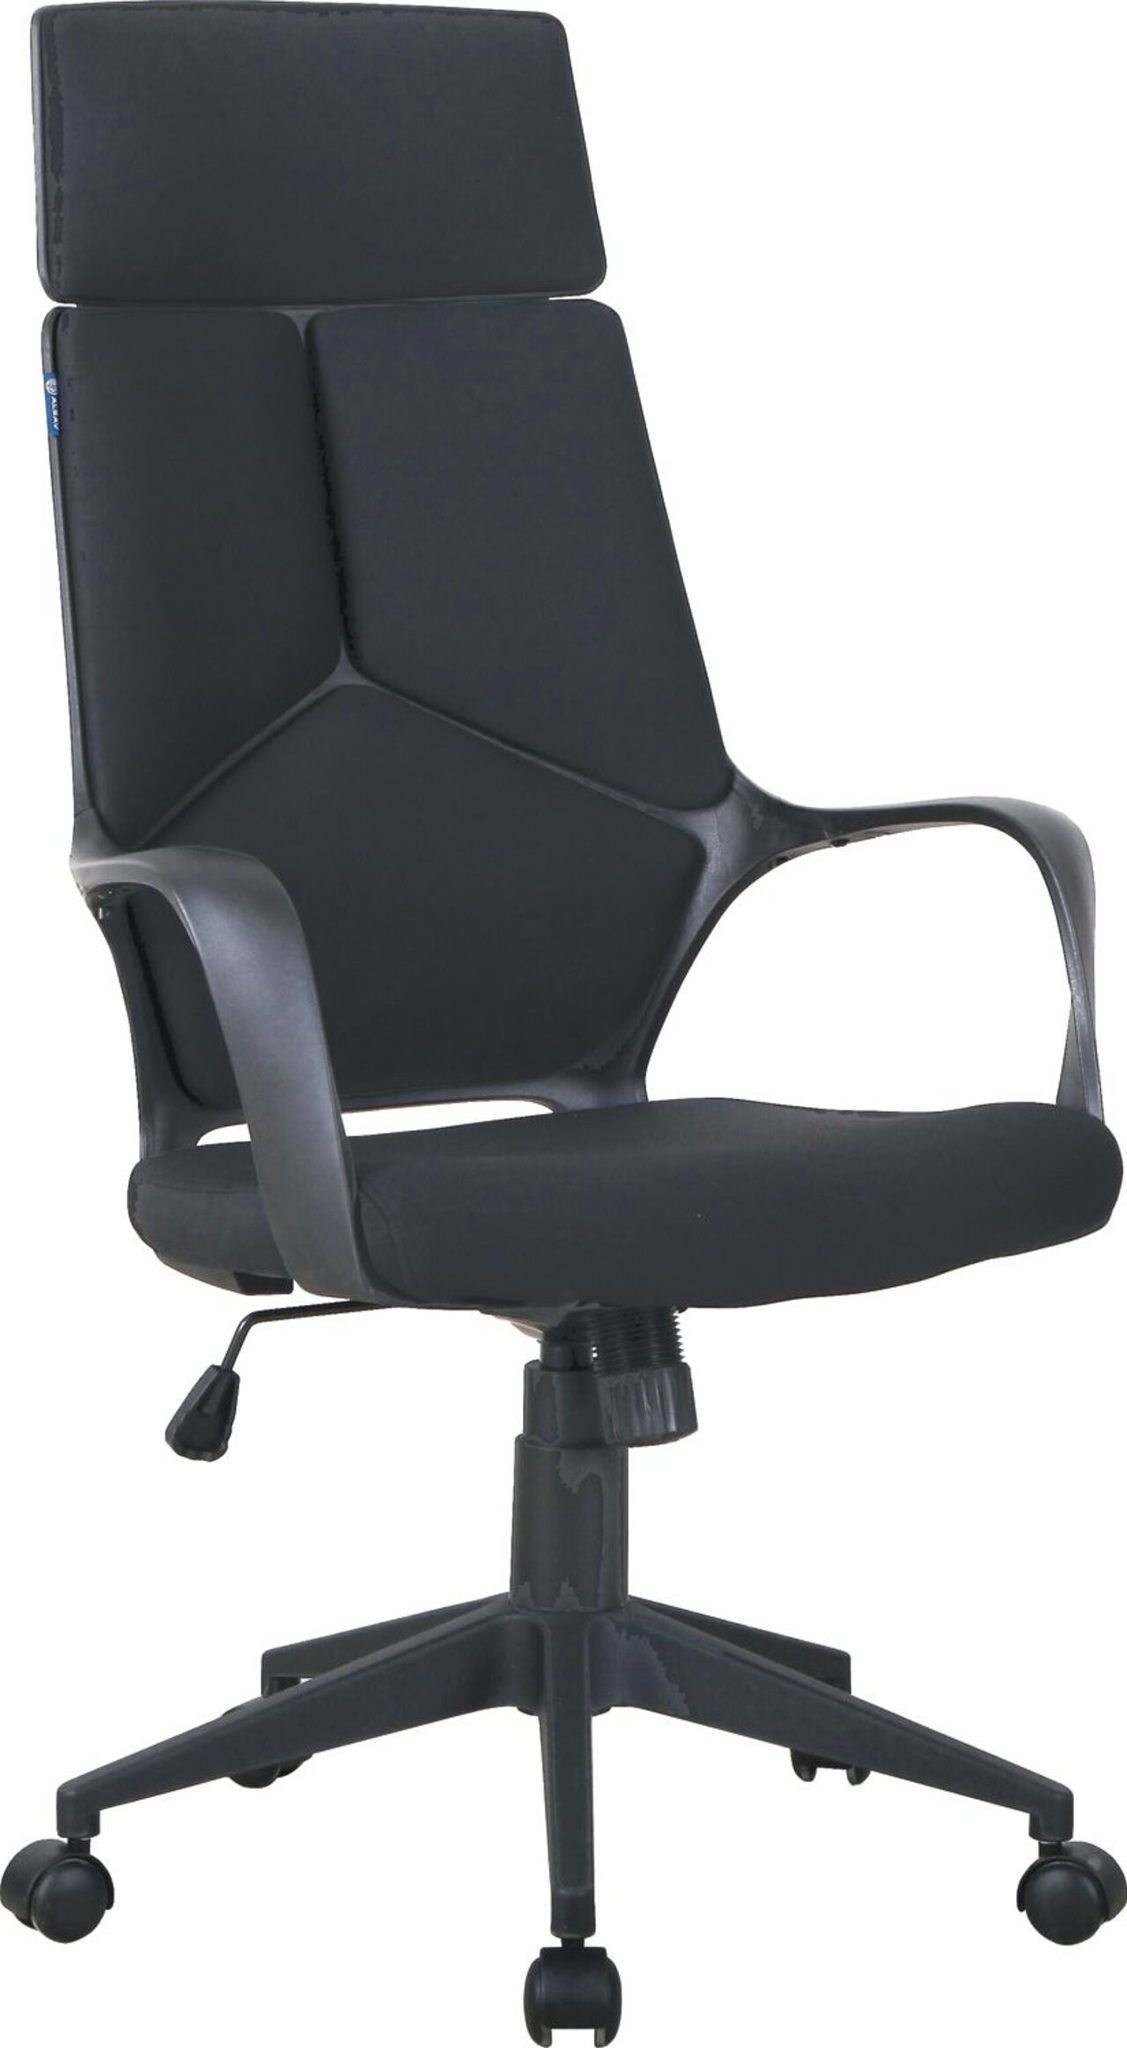 Кресло для руководителя Alsav кресла AL 766 Ткань черная